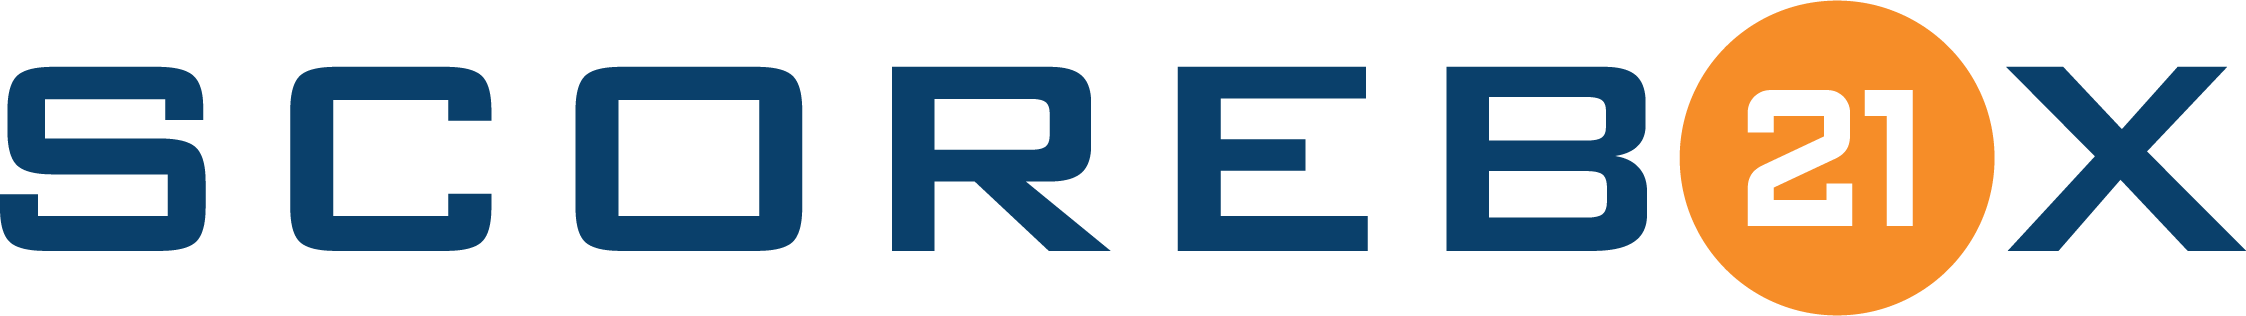 Scorebox21-Logo(horiz)